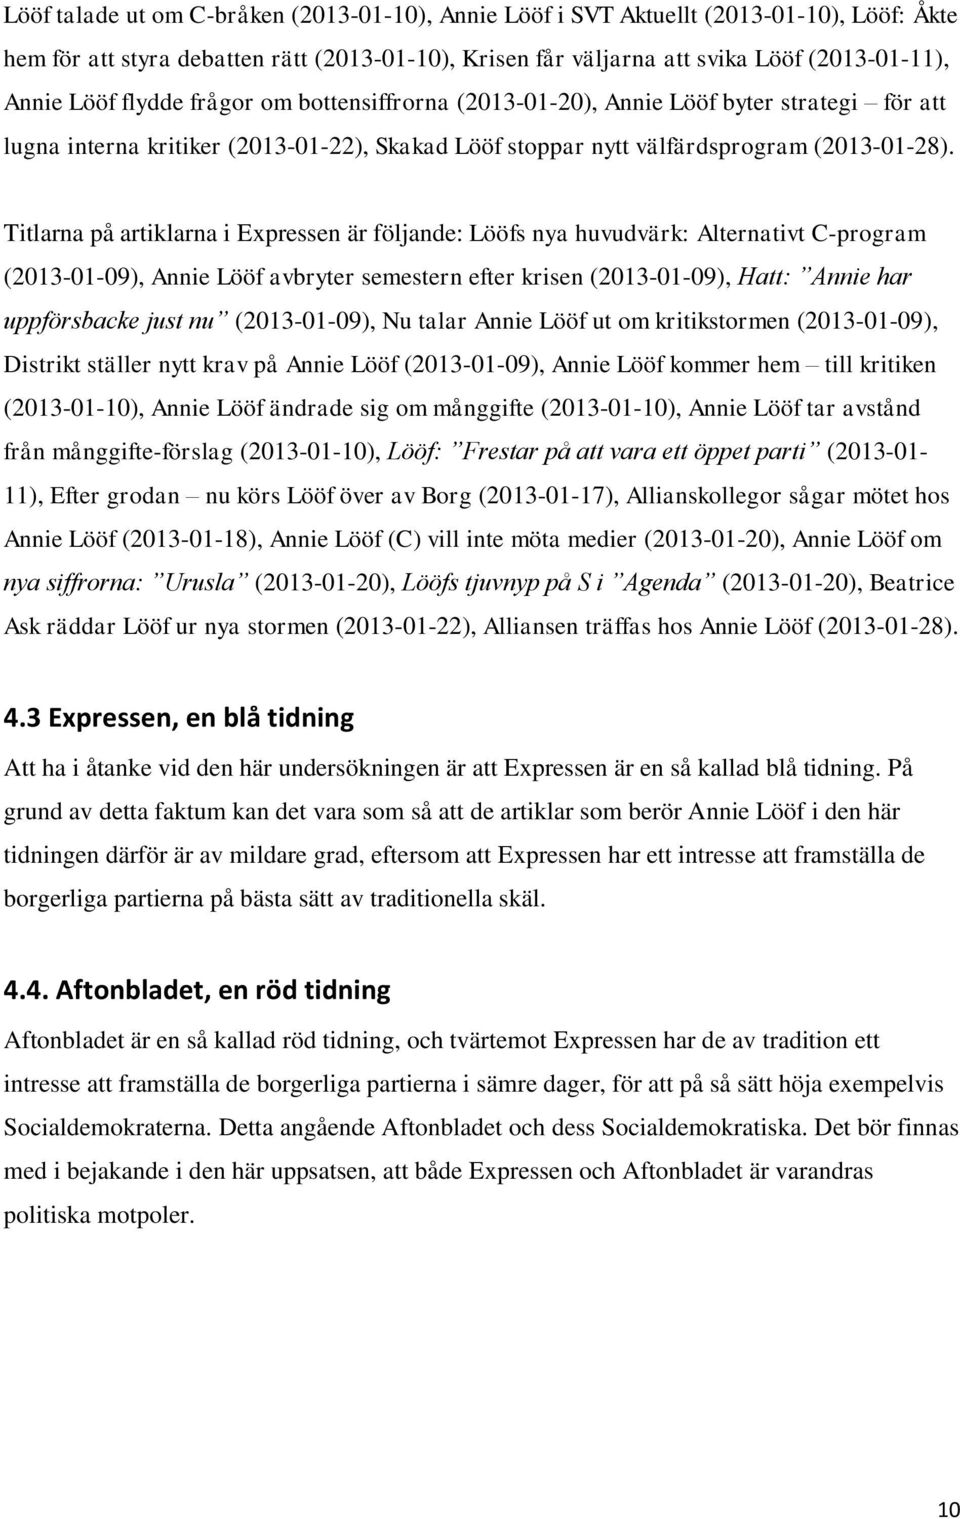 Titlarna på artiklarna i Expressen är följande: Lööfs nya huvudvärk: Alternativt C-program (2013-01-09), Annie Lööf avbryter semestern efter krisen (2013-01-09), Hatt: Annie har uppförsbacke just nu